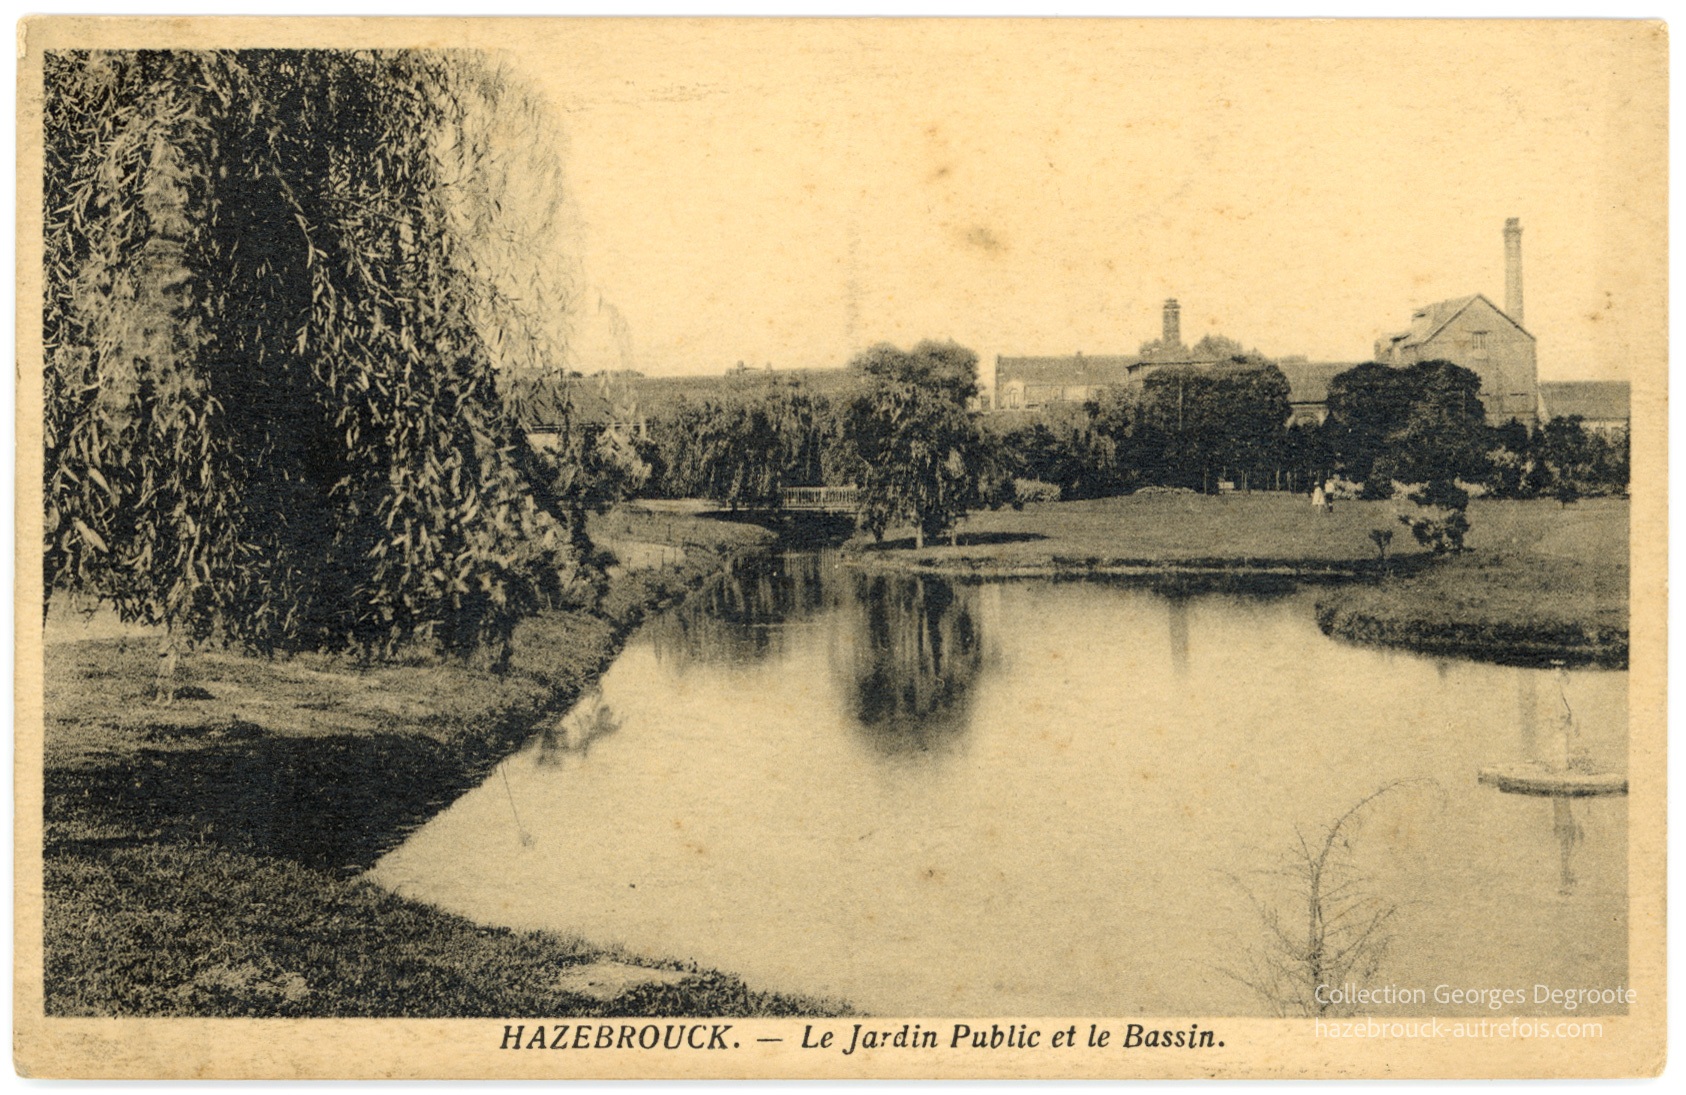 Le Jardin Public et le Bassin